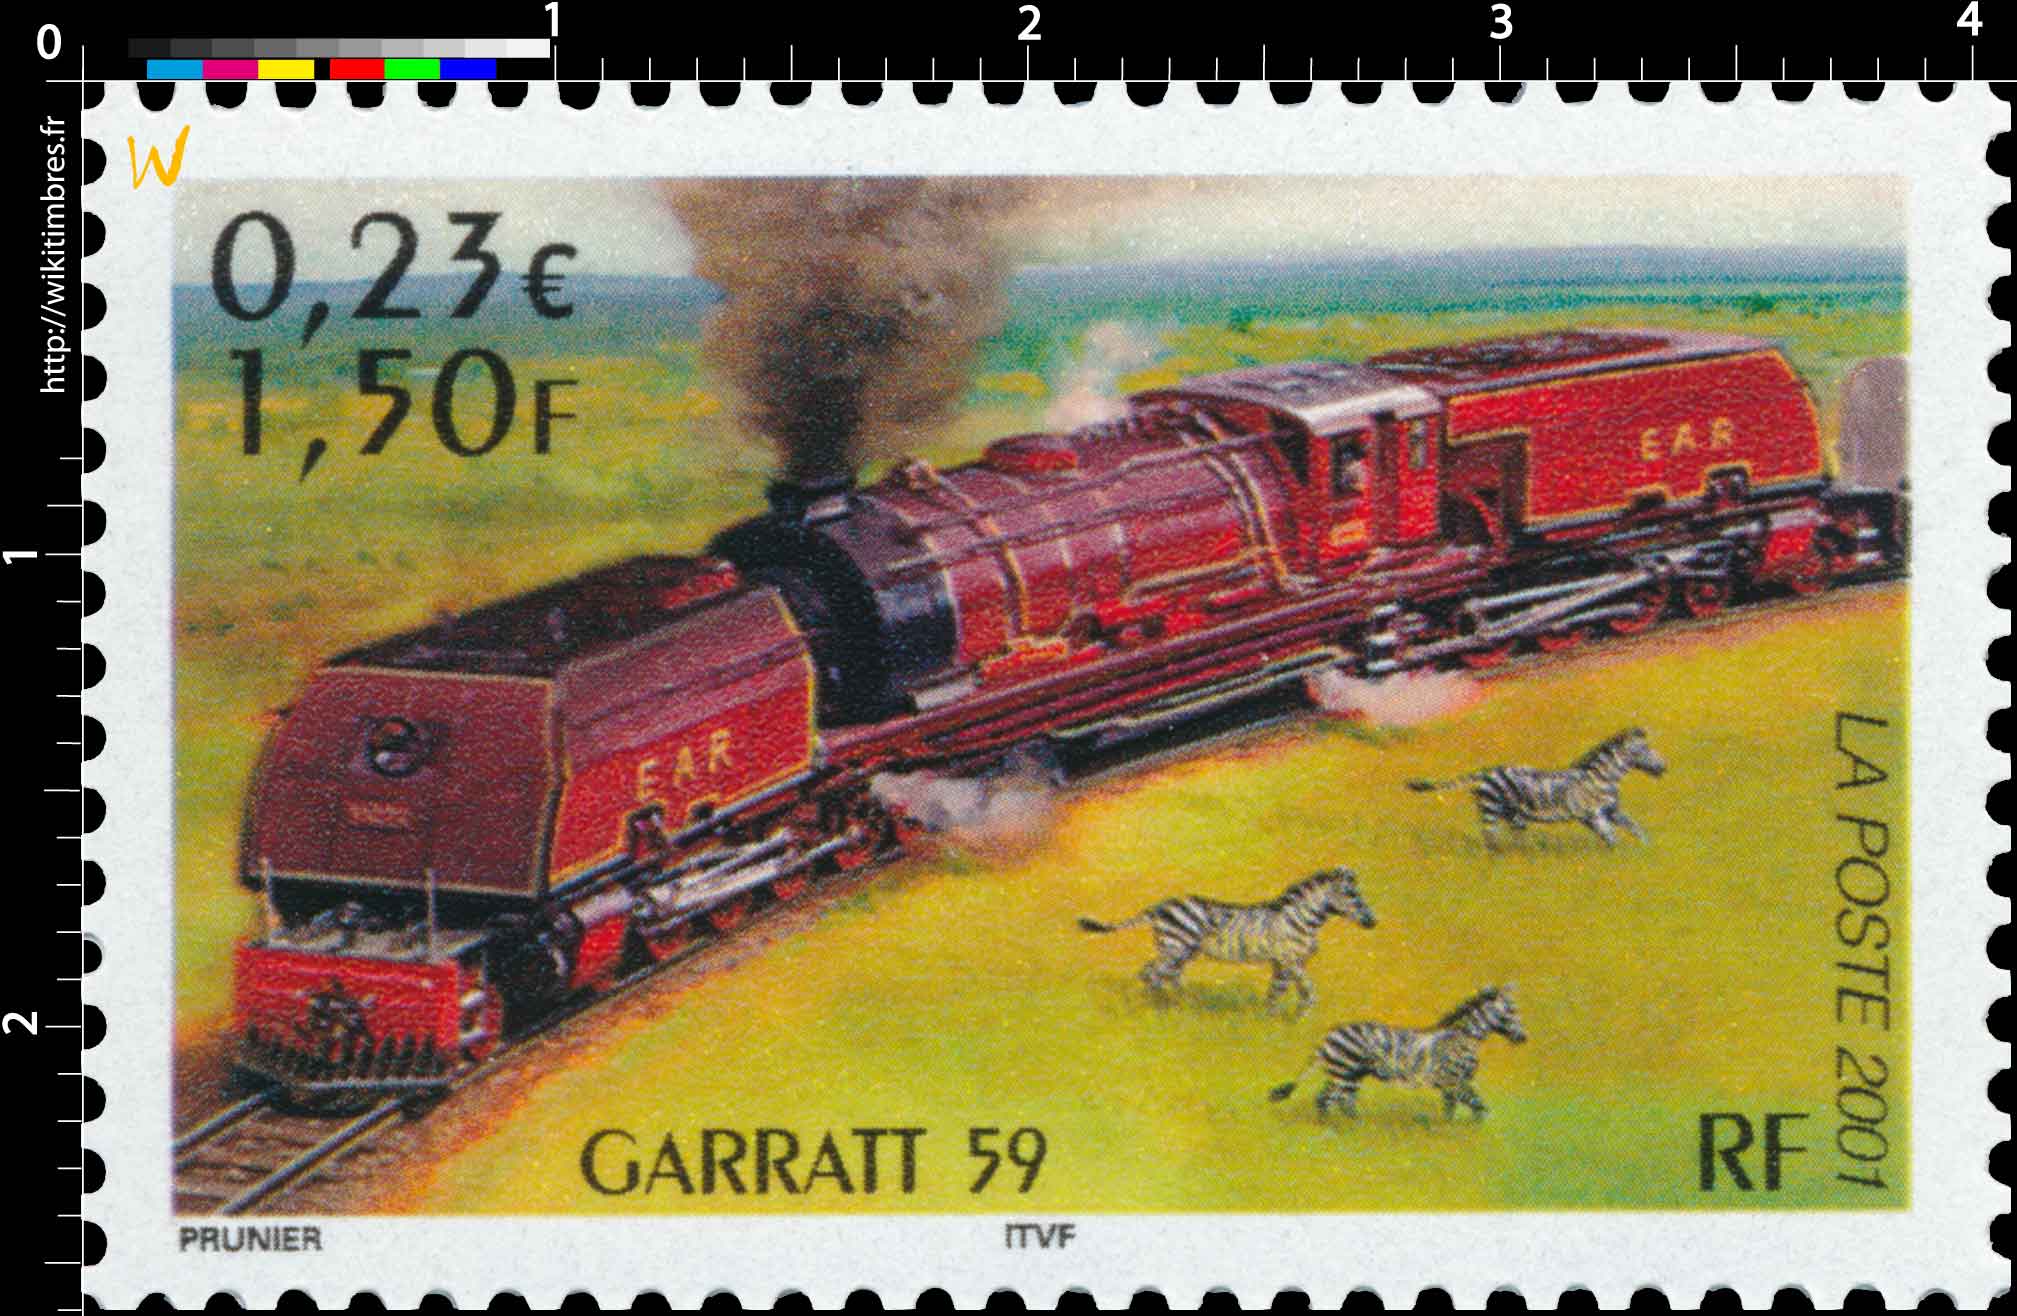 2001 GARRATT 59